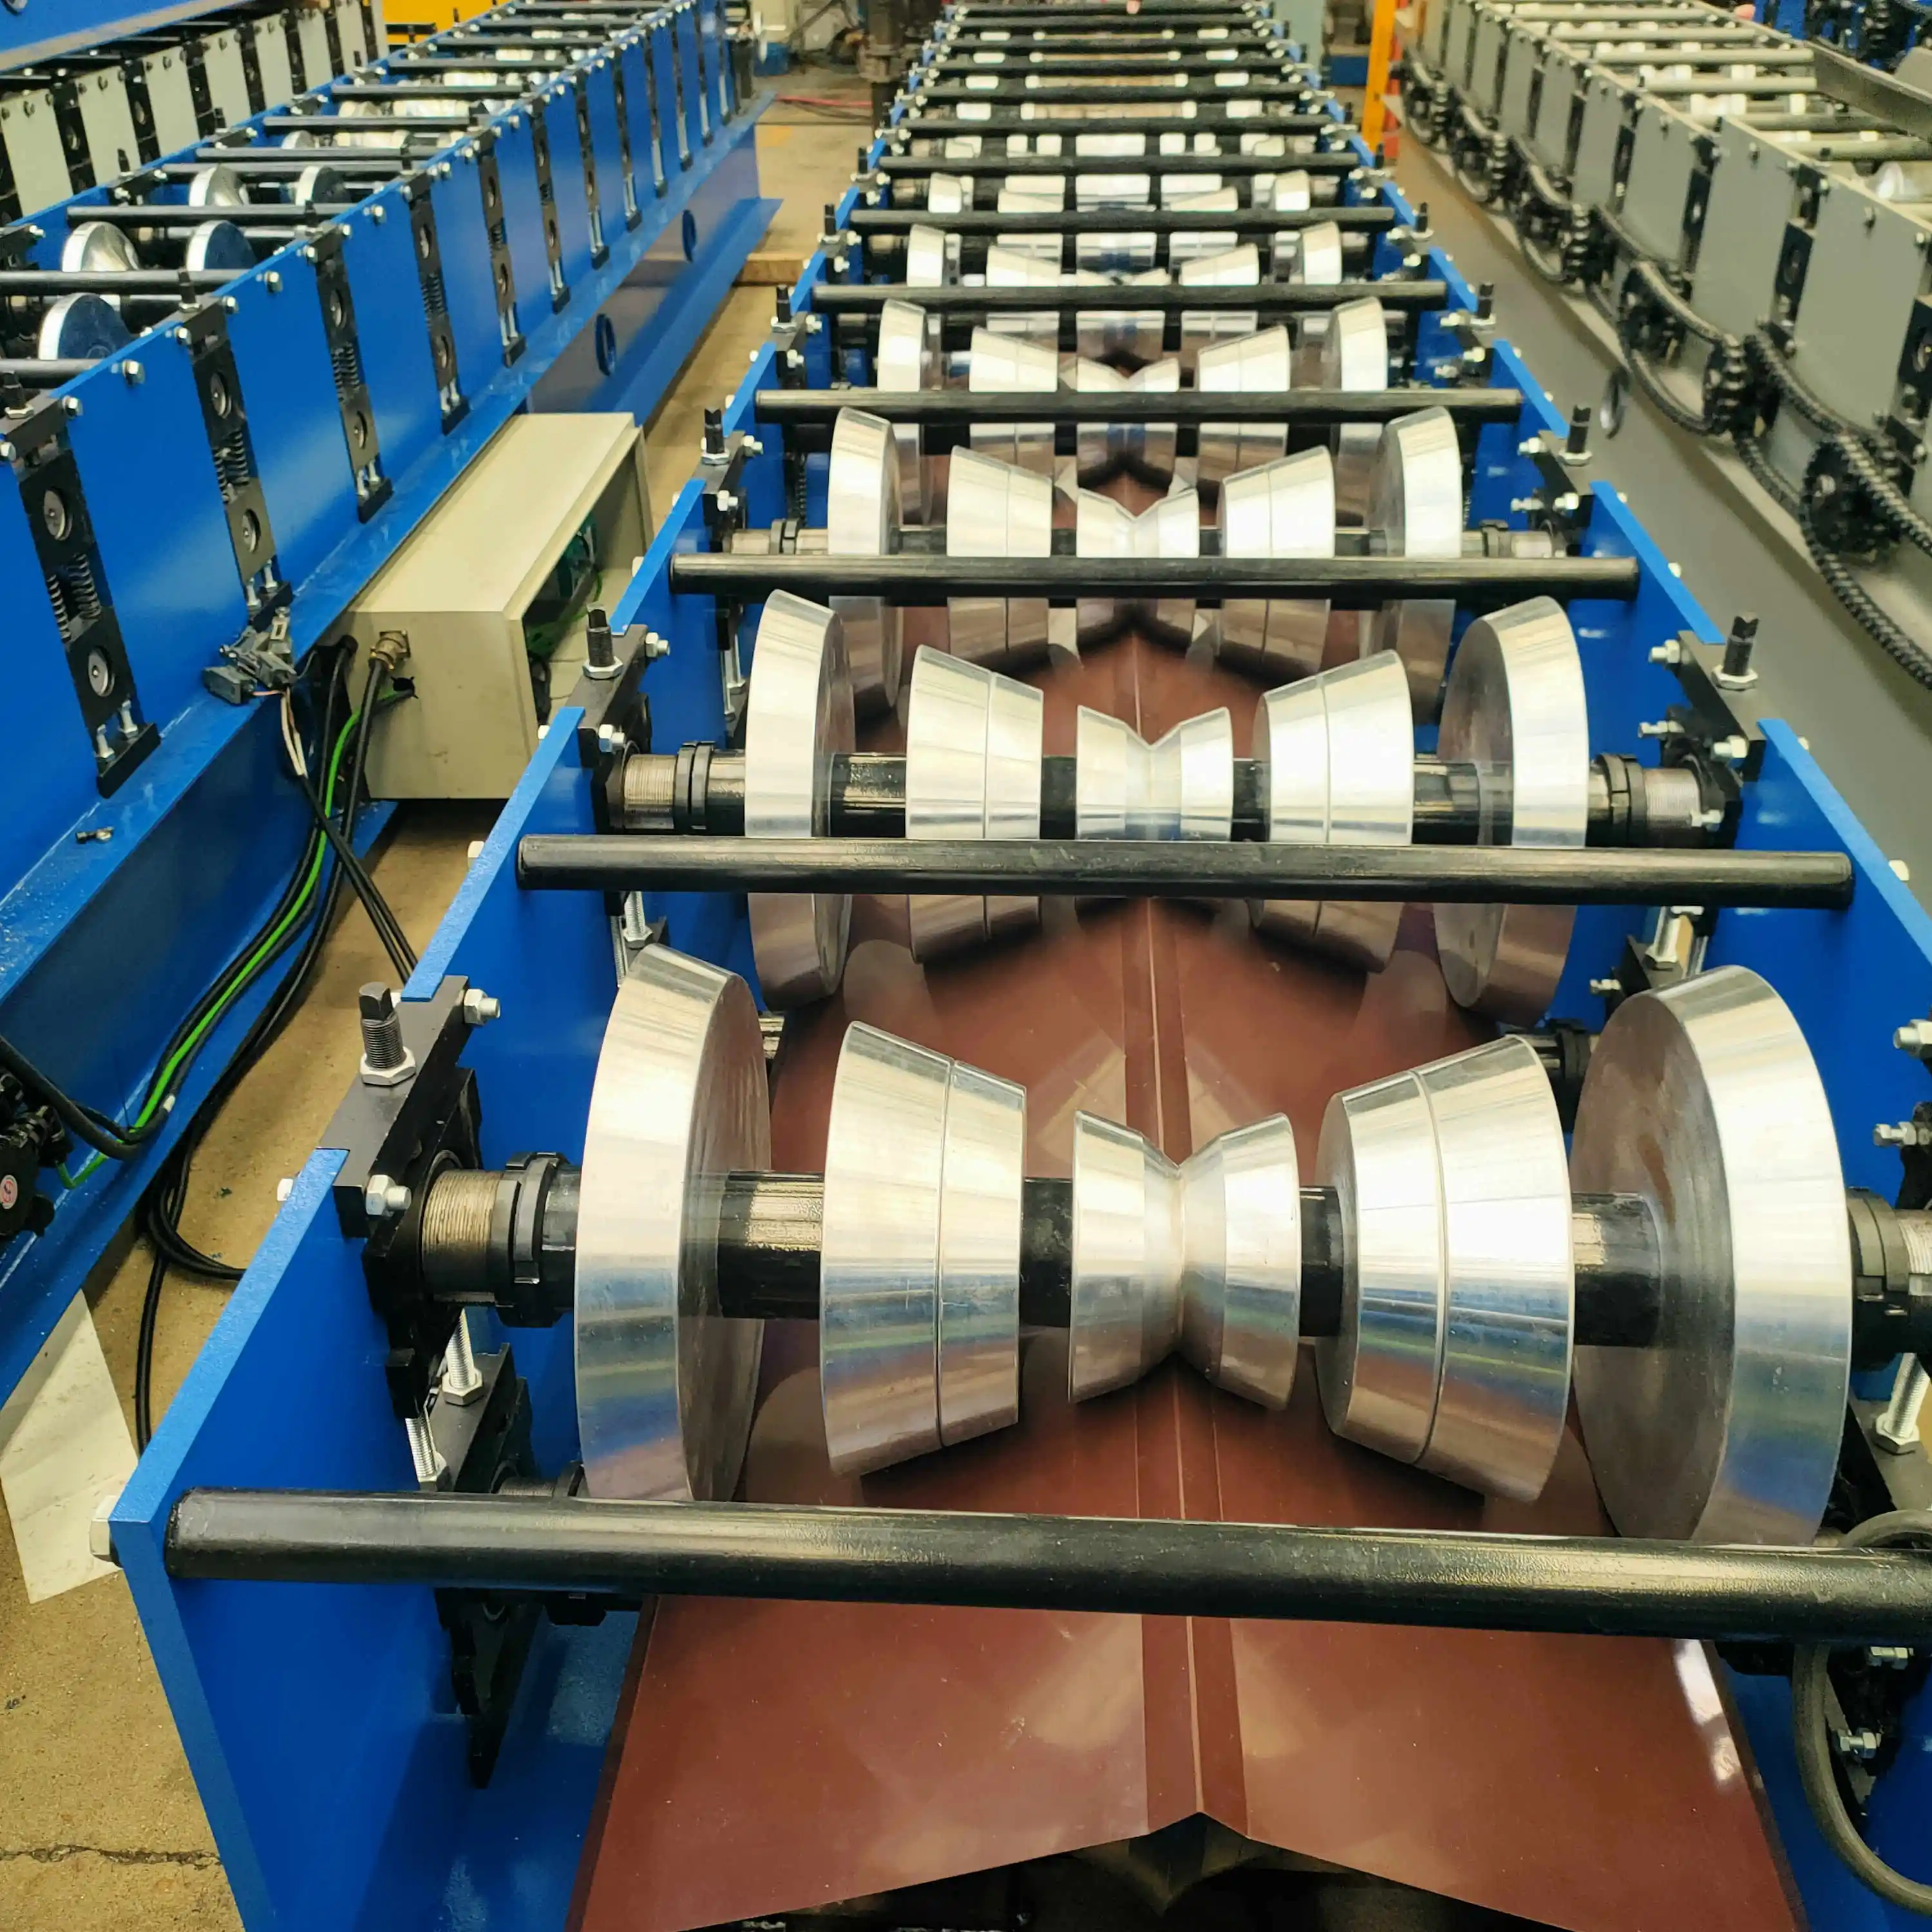 Wand paneel Press ziegel TR4 ibr Dachziegel machen Maschine China Produktions linie